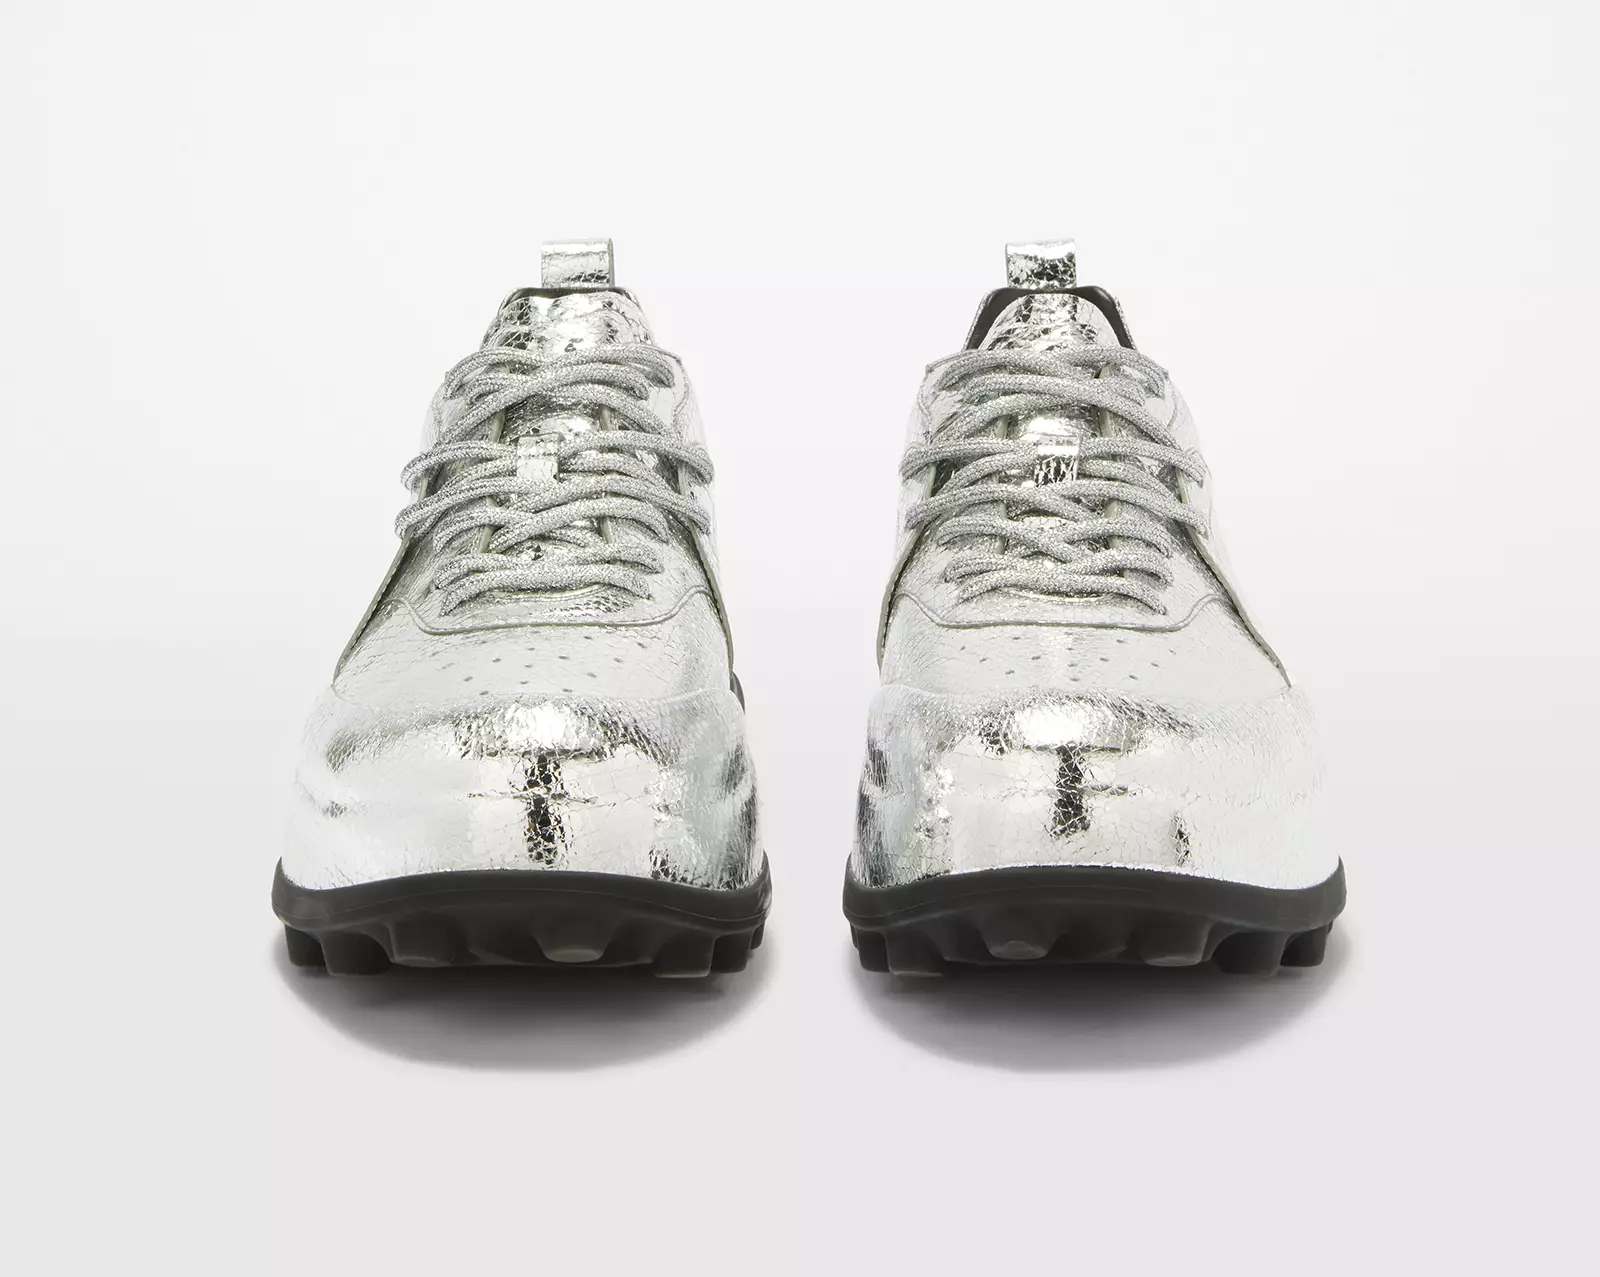 La sneaker Orb de Jil Sander redéfinit l'élégance de la chaussure masculine